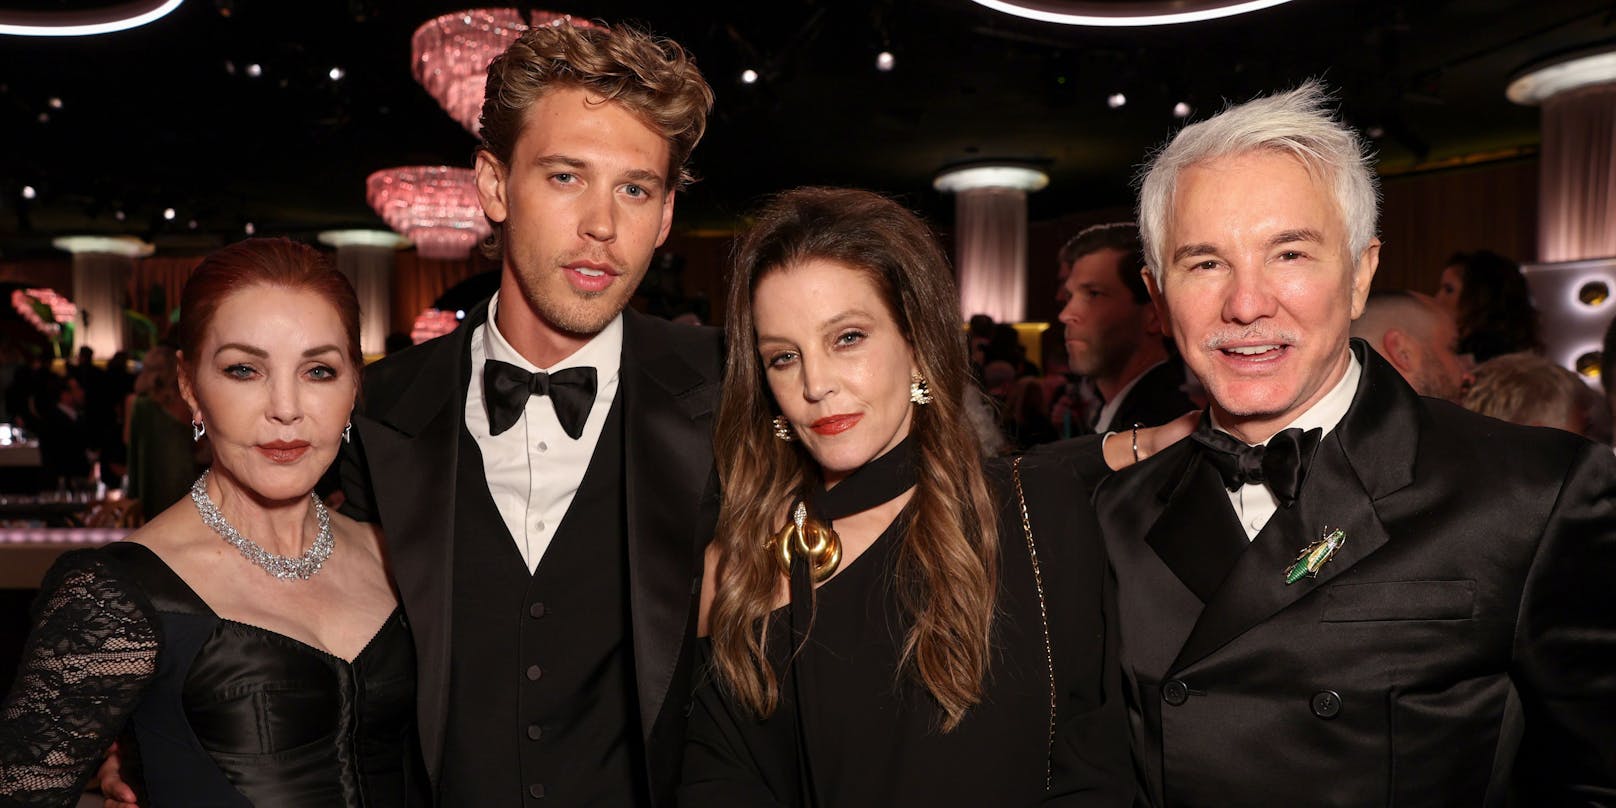 Priscilla (l.) mit ihrer Tochter Lisa Marie Presley, Austin Butler (m.) und Baz Luhrmann ("Elvis"-Regisseur, r.) bei den Golden Globes.